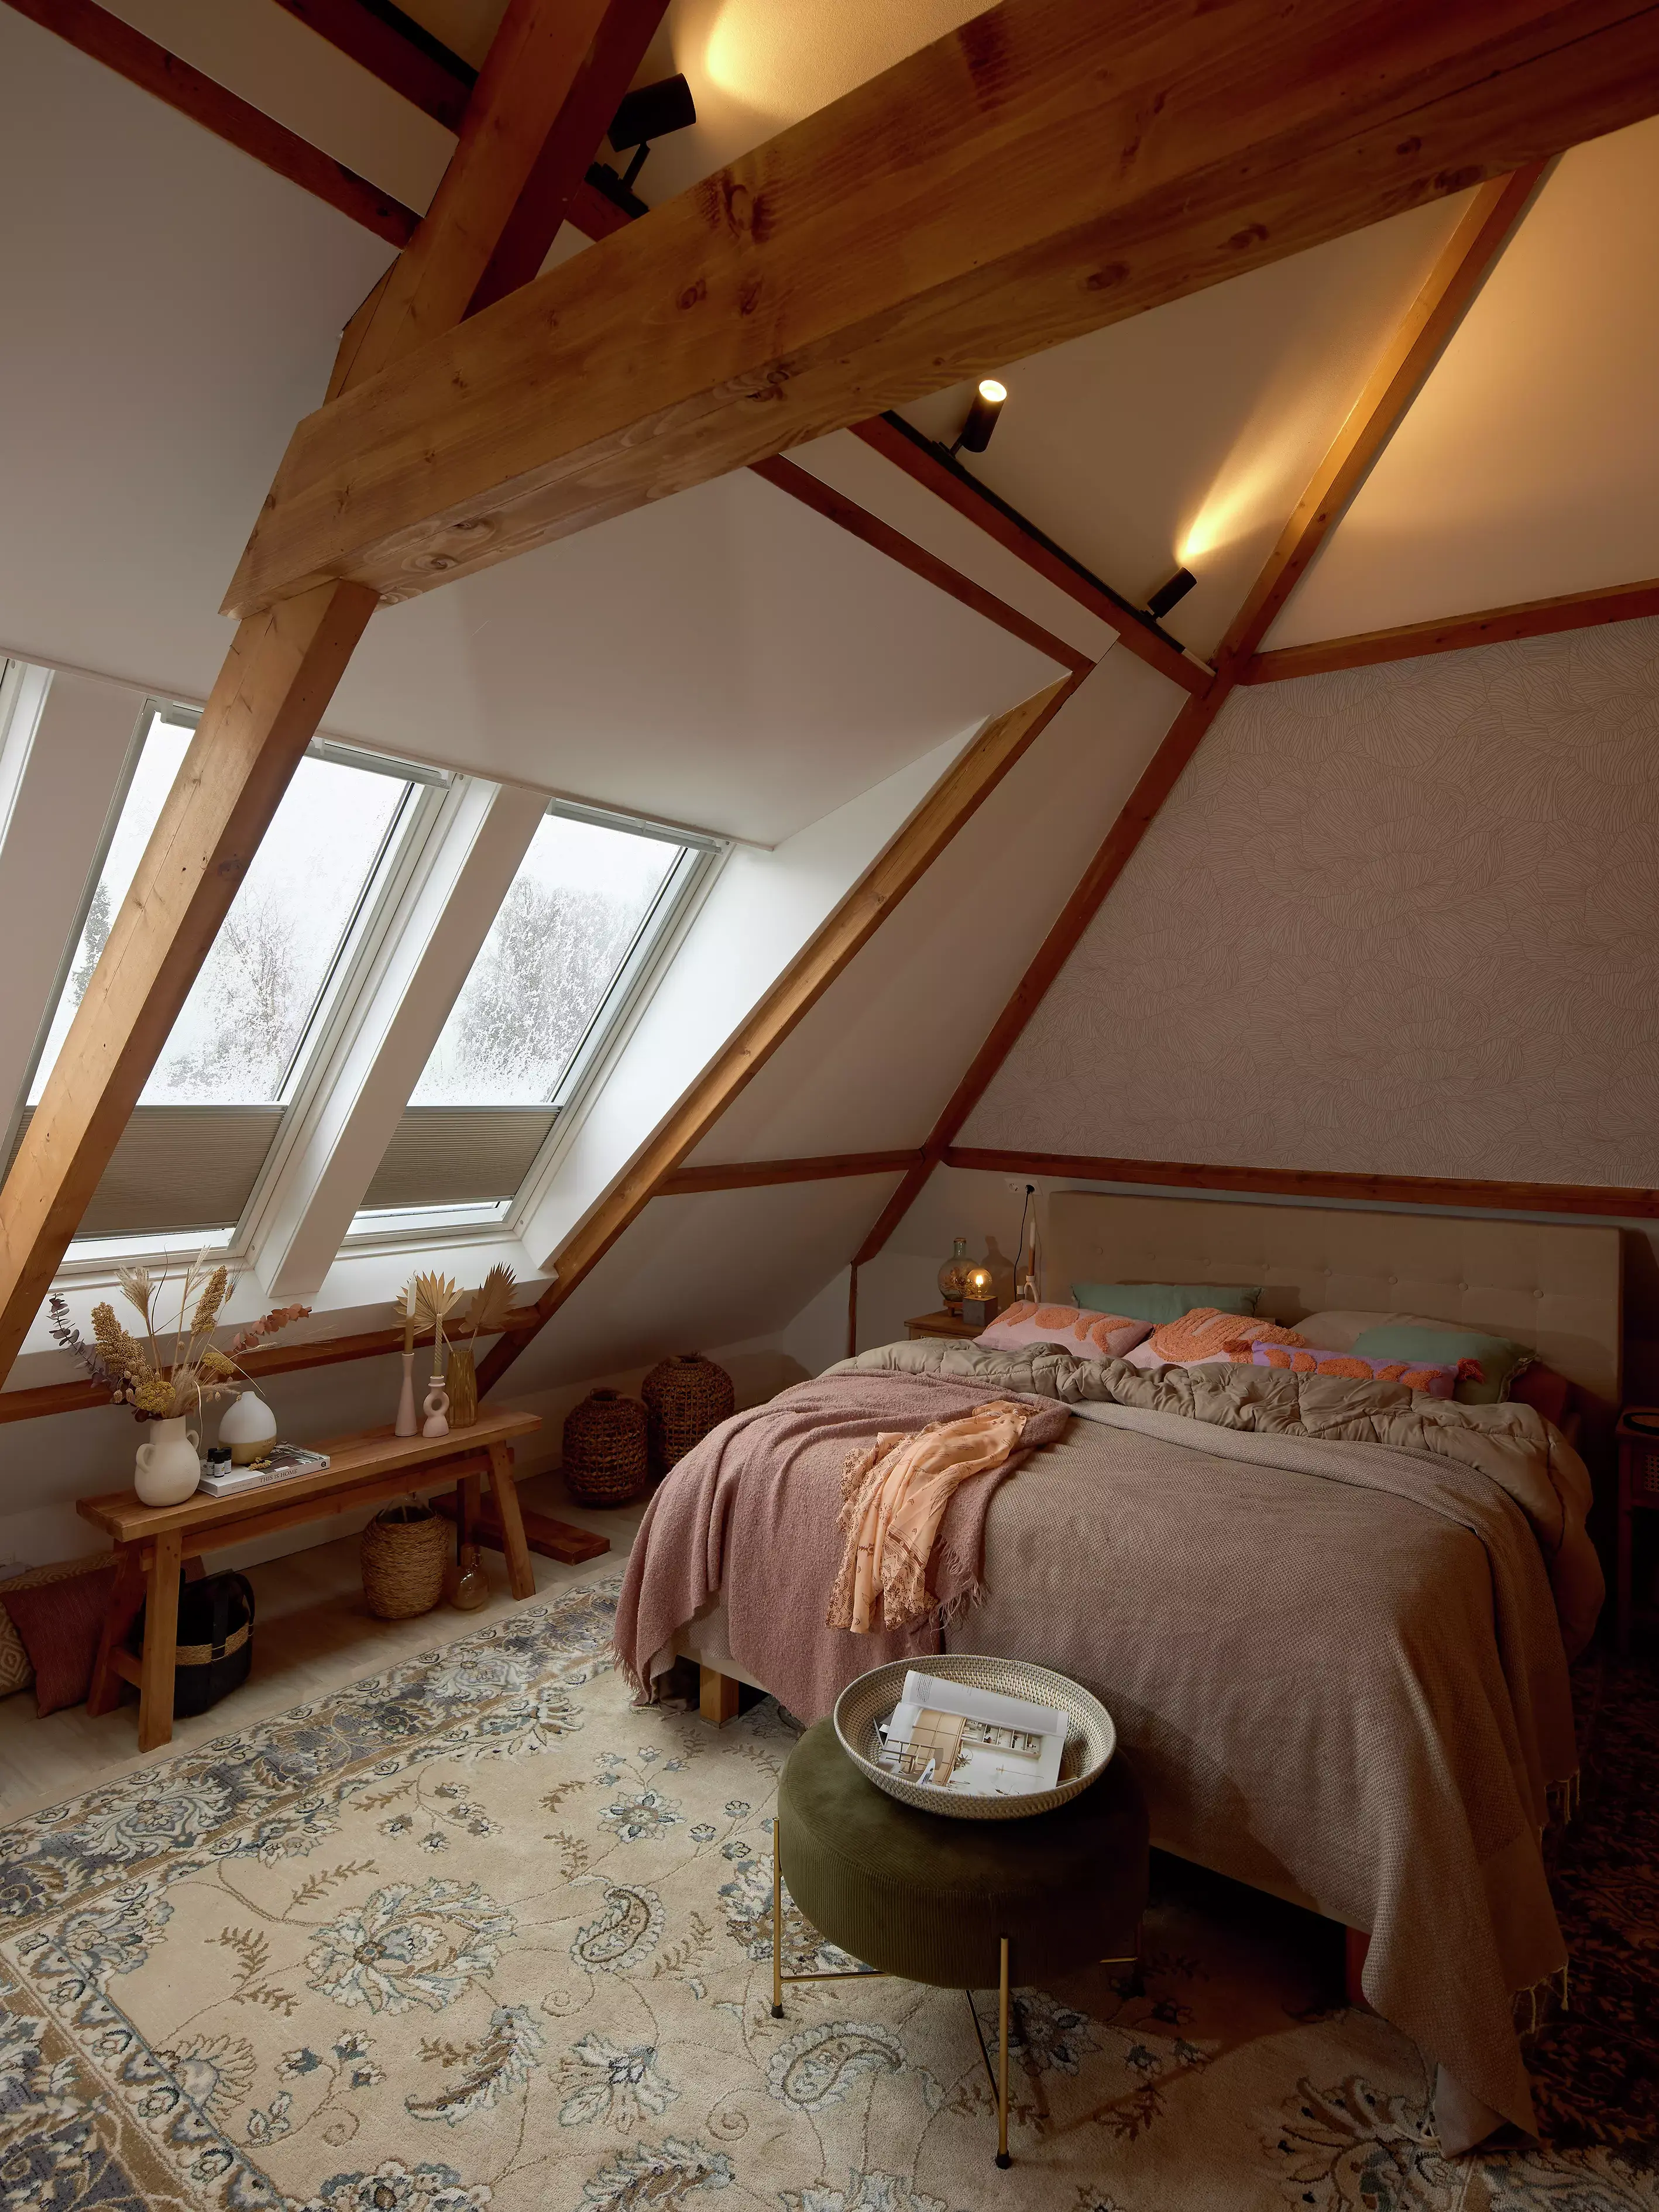 Chambre de comble avec poutres apparentes et fenêtres de toit VELUX, décorée dans des tons chaleureux.